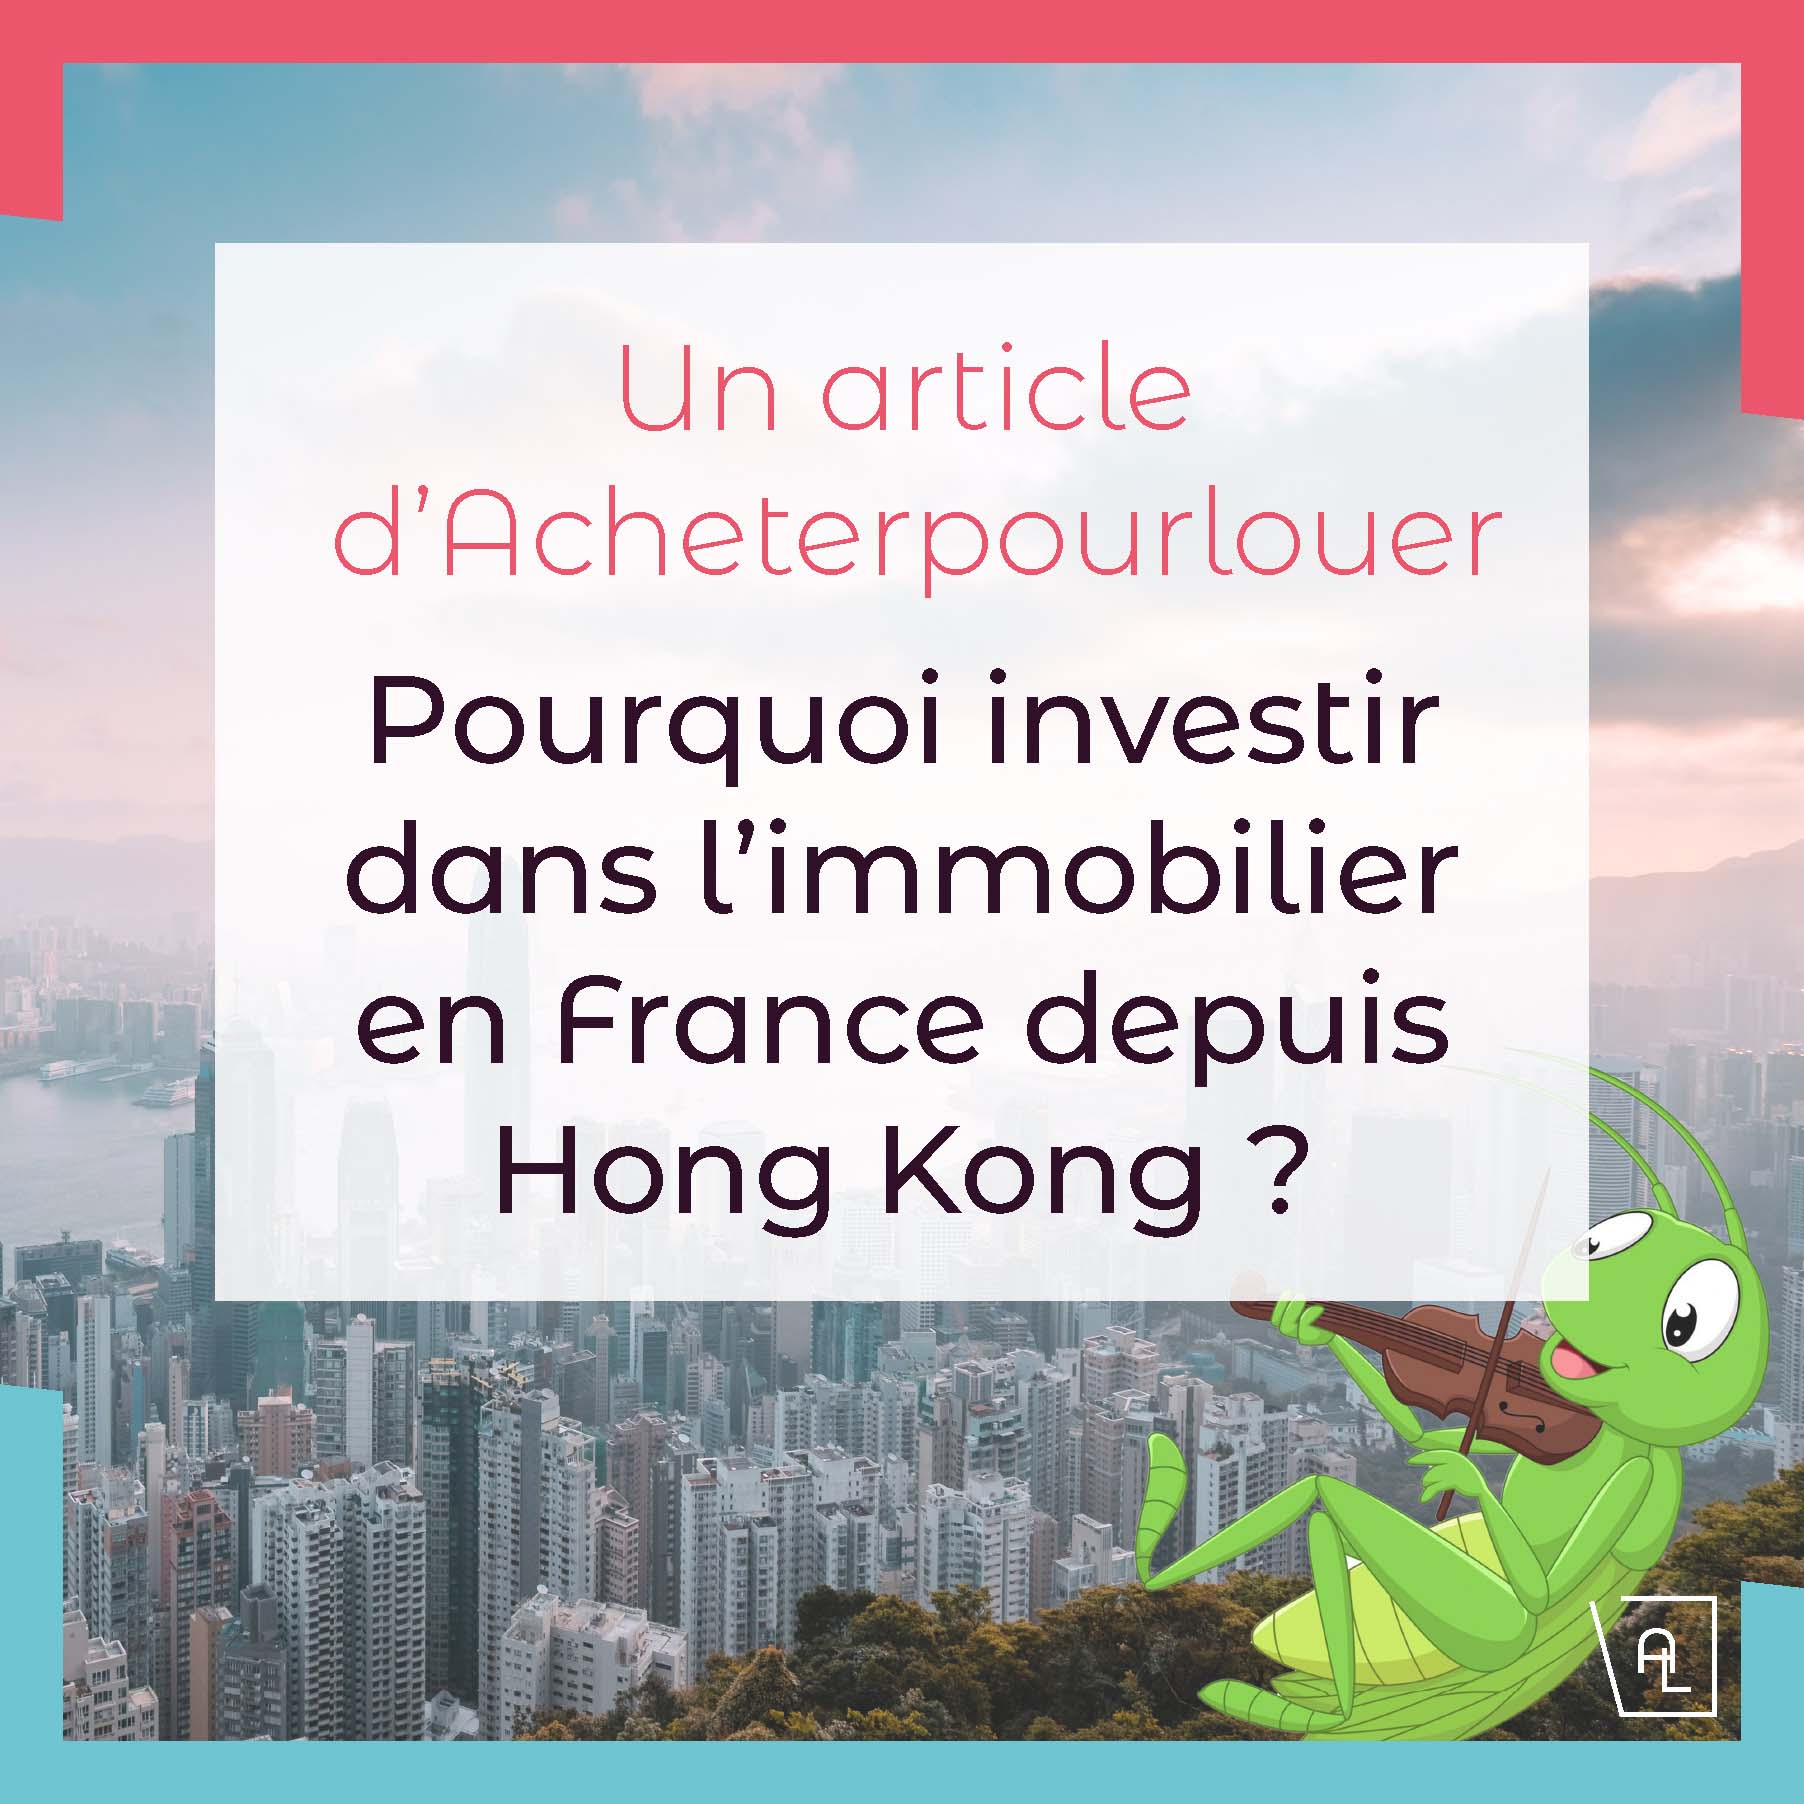 Pourquoi investir dans l’immobilier en France depuis Hong Kong ?